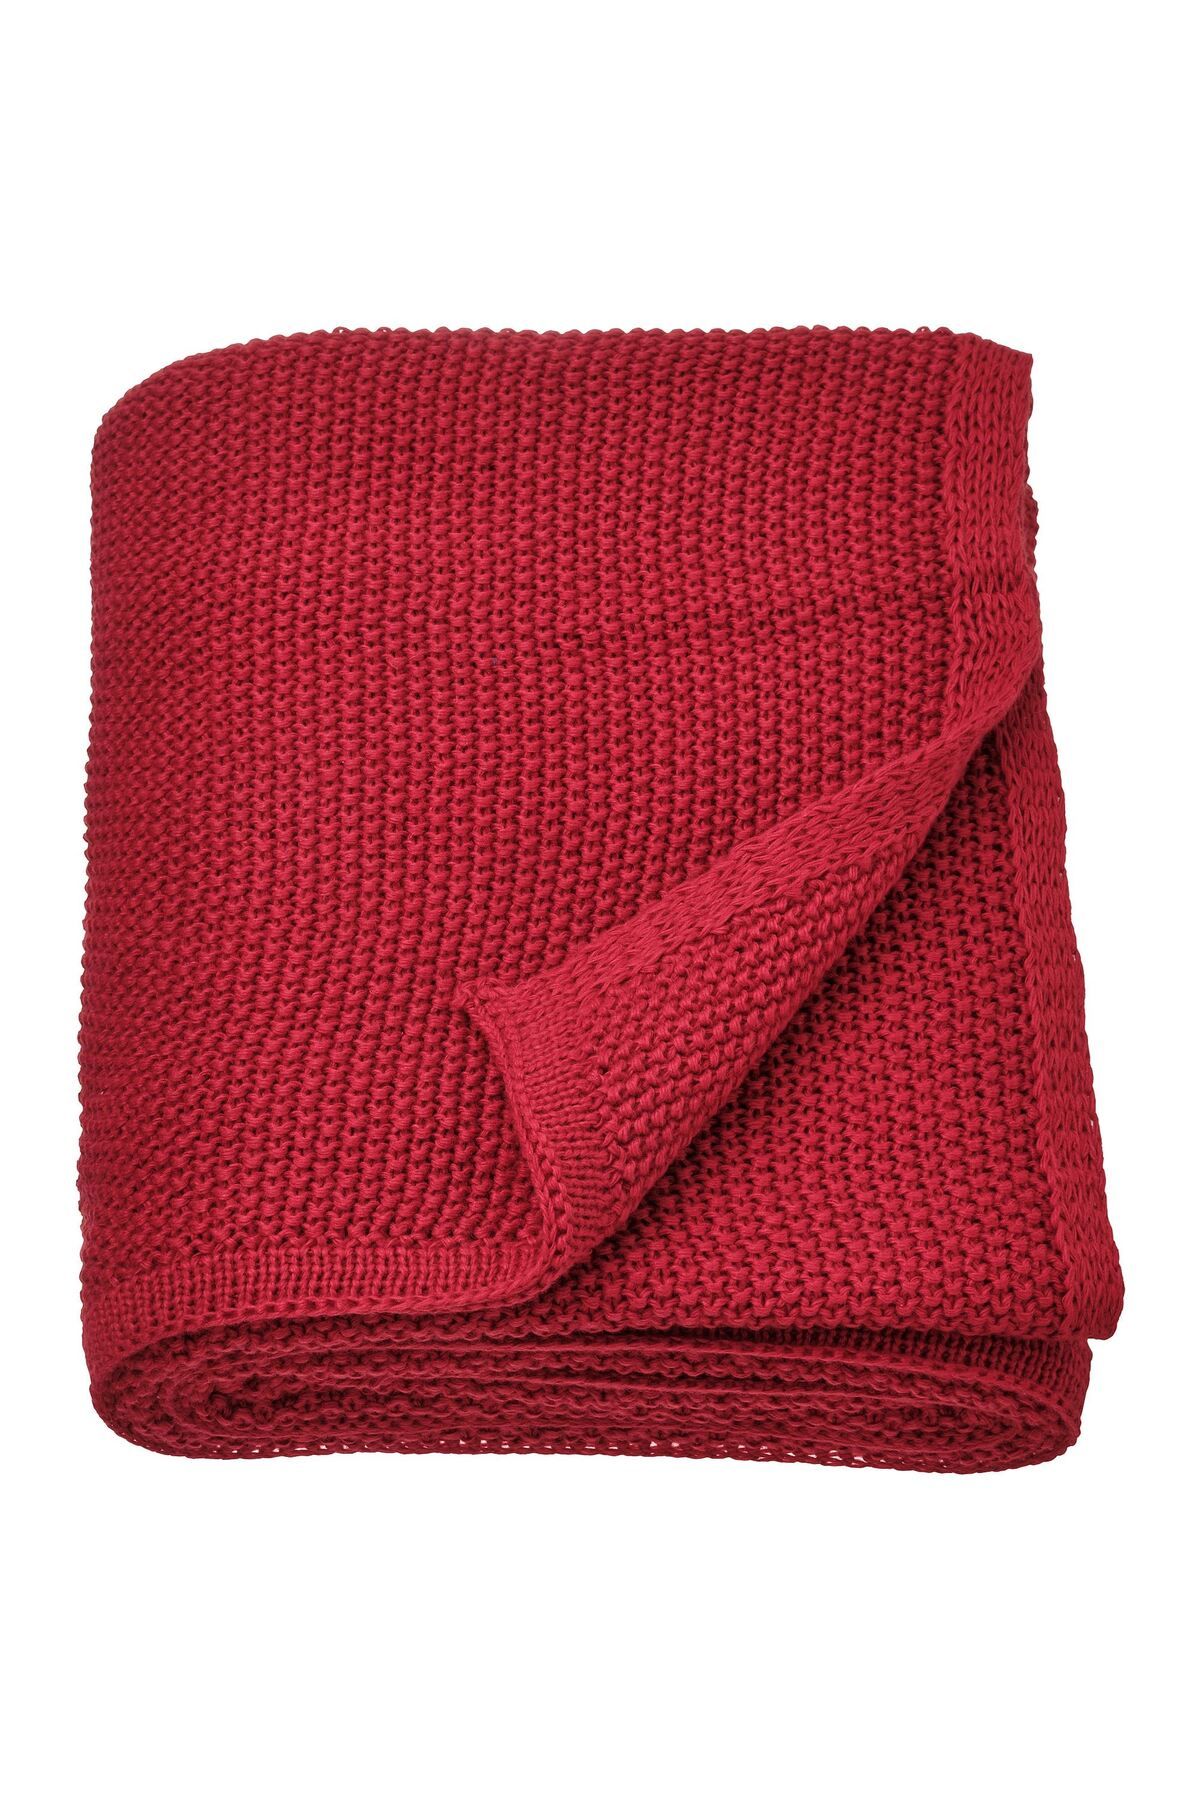 IKEA örtü, battaniye, koyu kırmızı, 130x170 cm